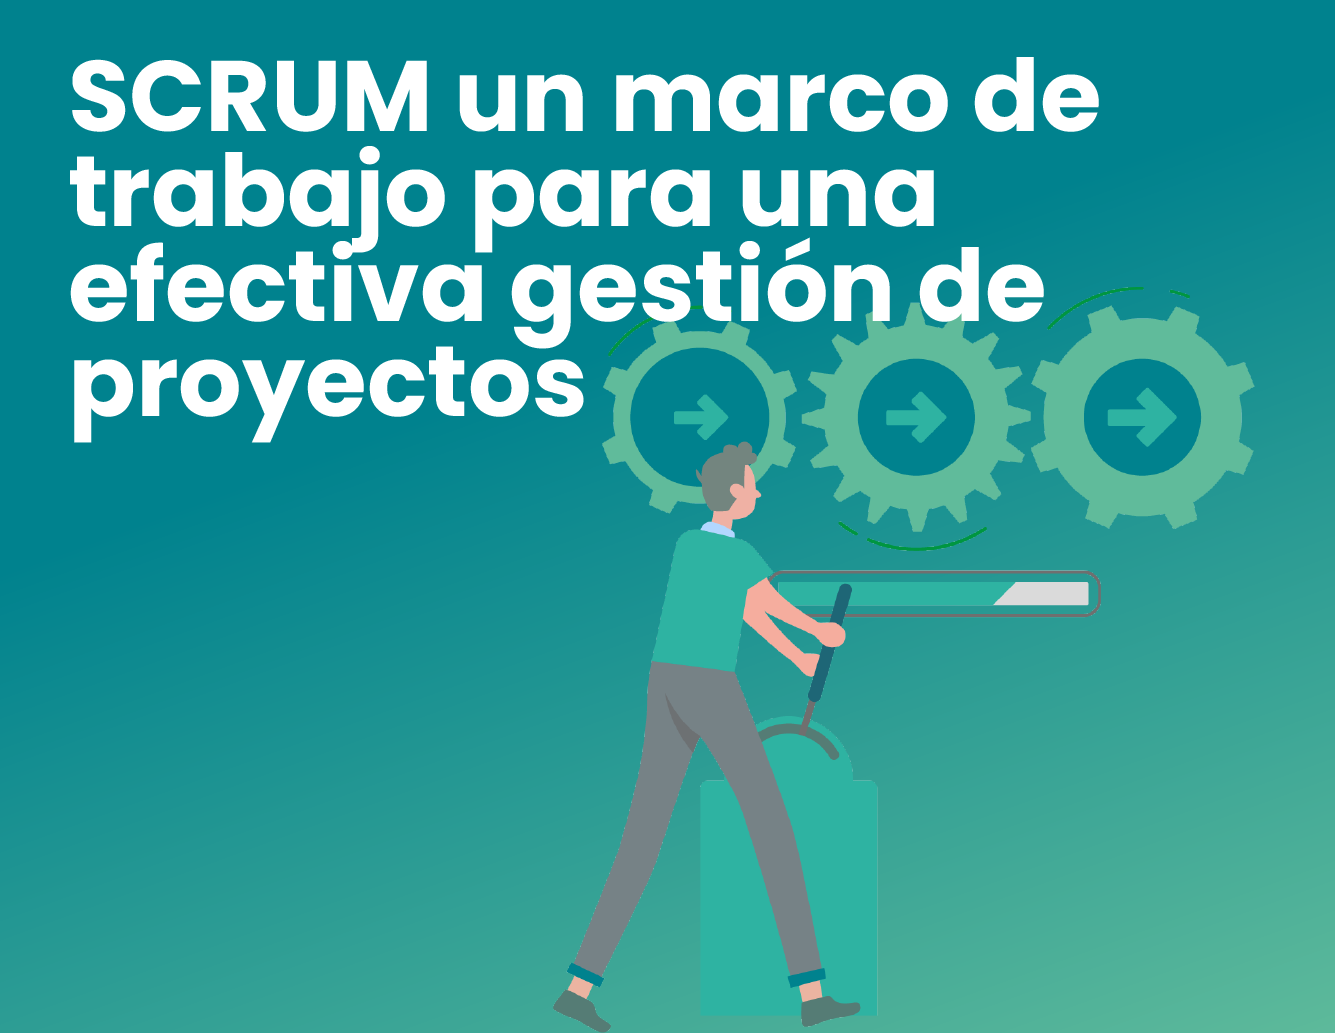 SCRUM un marco de trabajo para una efectiva gestión de proyectos